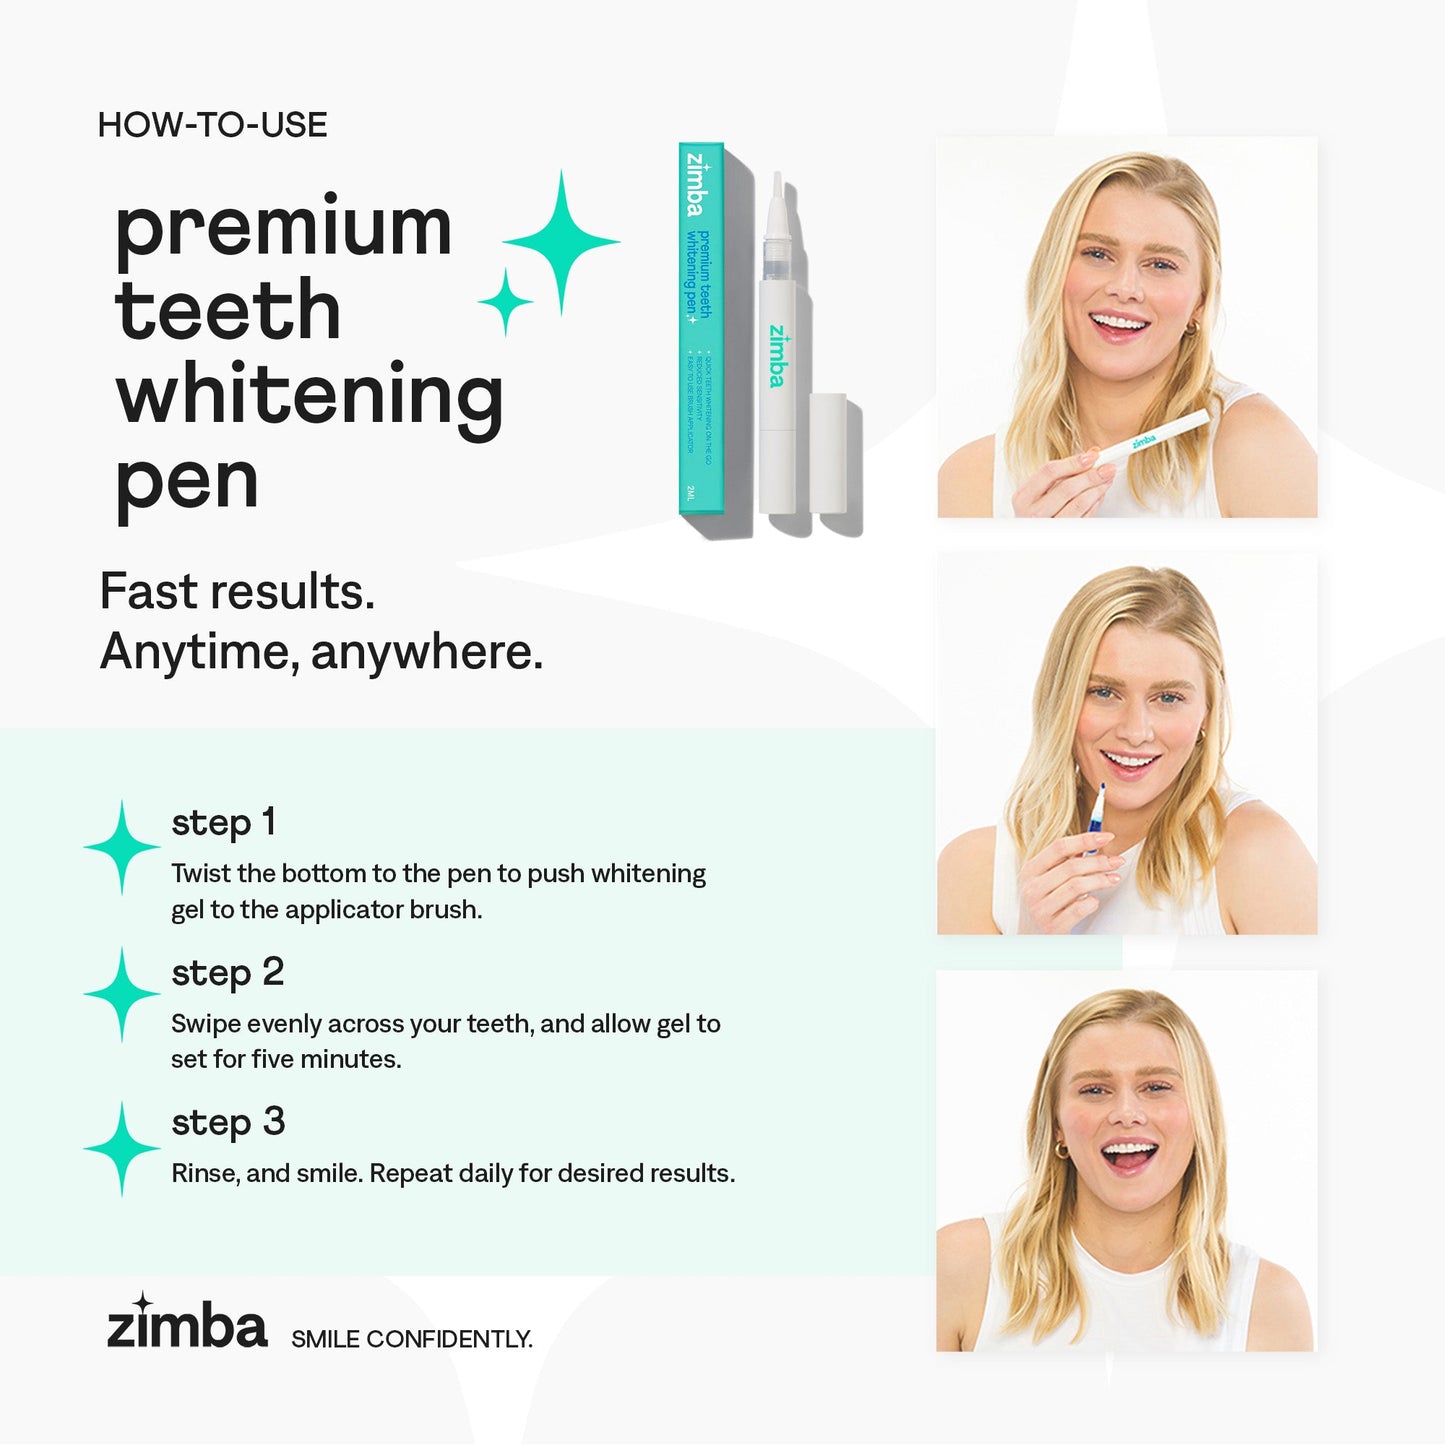 Premium Teeth Whitening Pen by Zimba Whitening